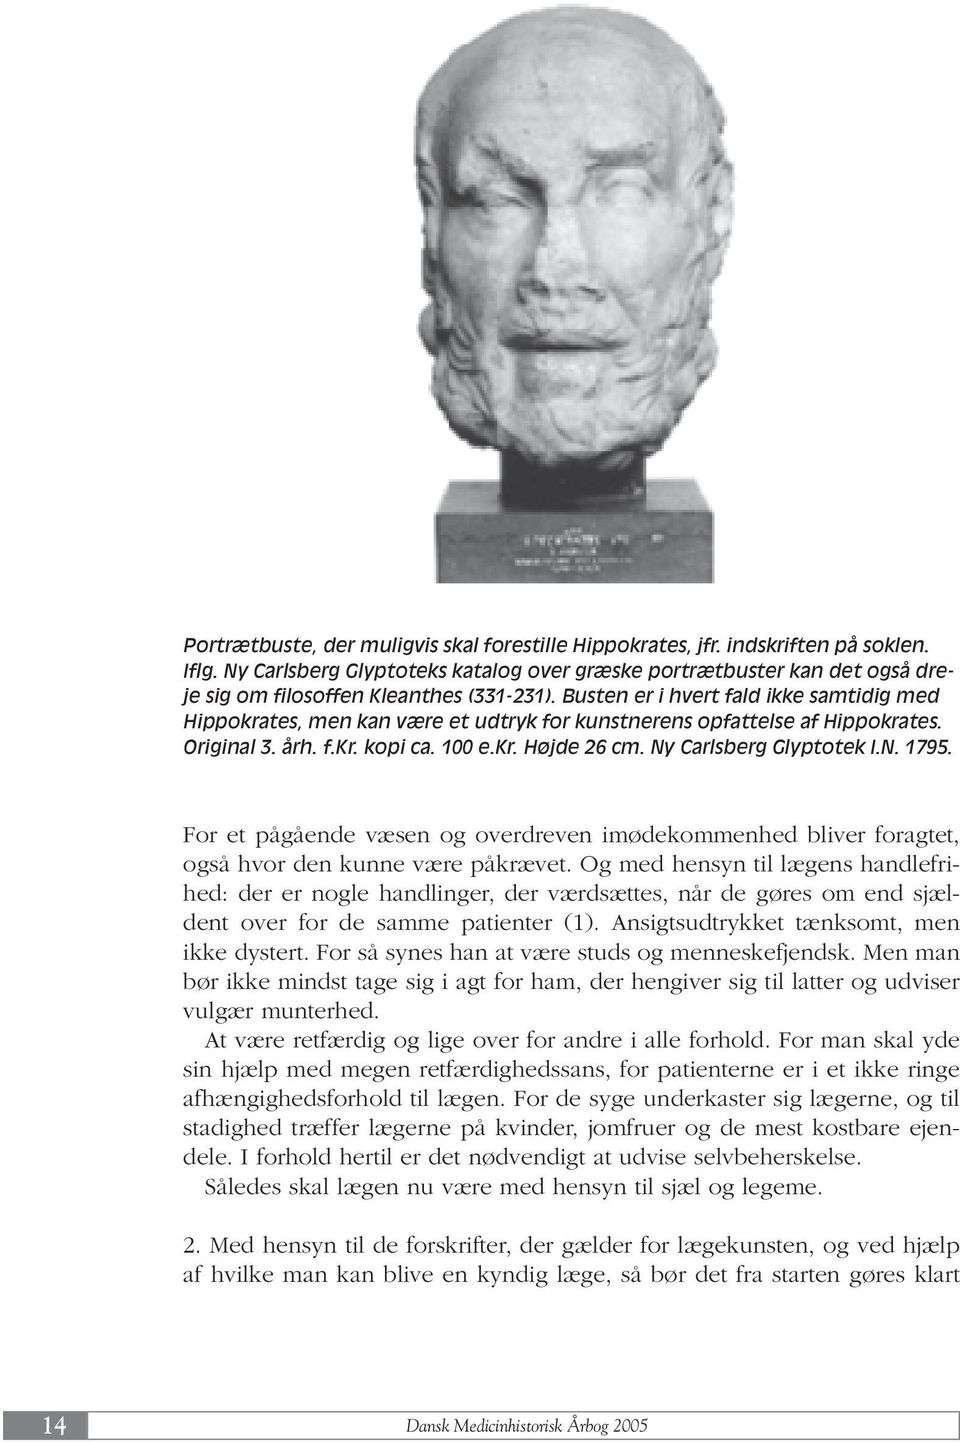 Busten er i hvert fald ikke samtidig med Hippokrates, men kan være et udtryk for kunstnerens opfattelse af Hippokrates. Original 3. årh. f.kr. kopi ca. 100 e.kr. Højde 26 cm. Ny Carlsberg Glyptotek I.